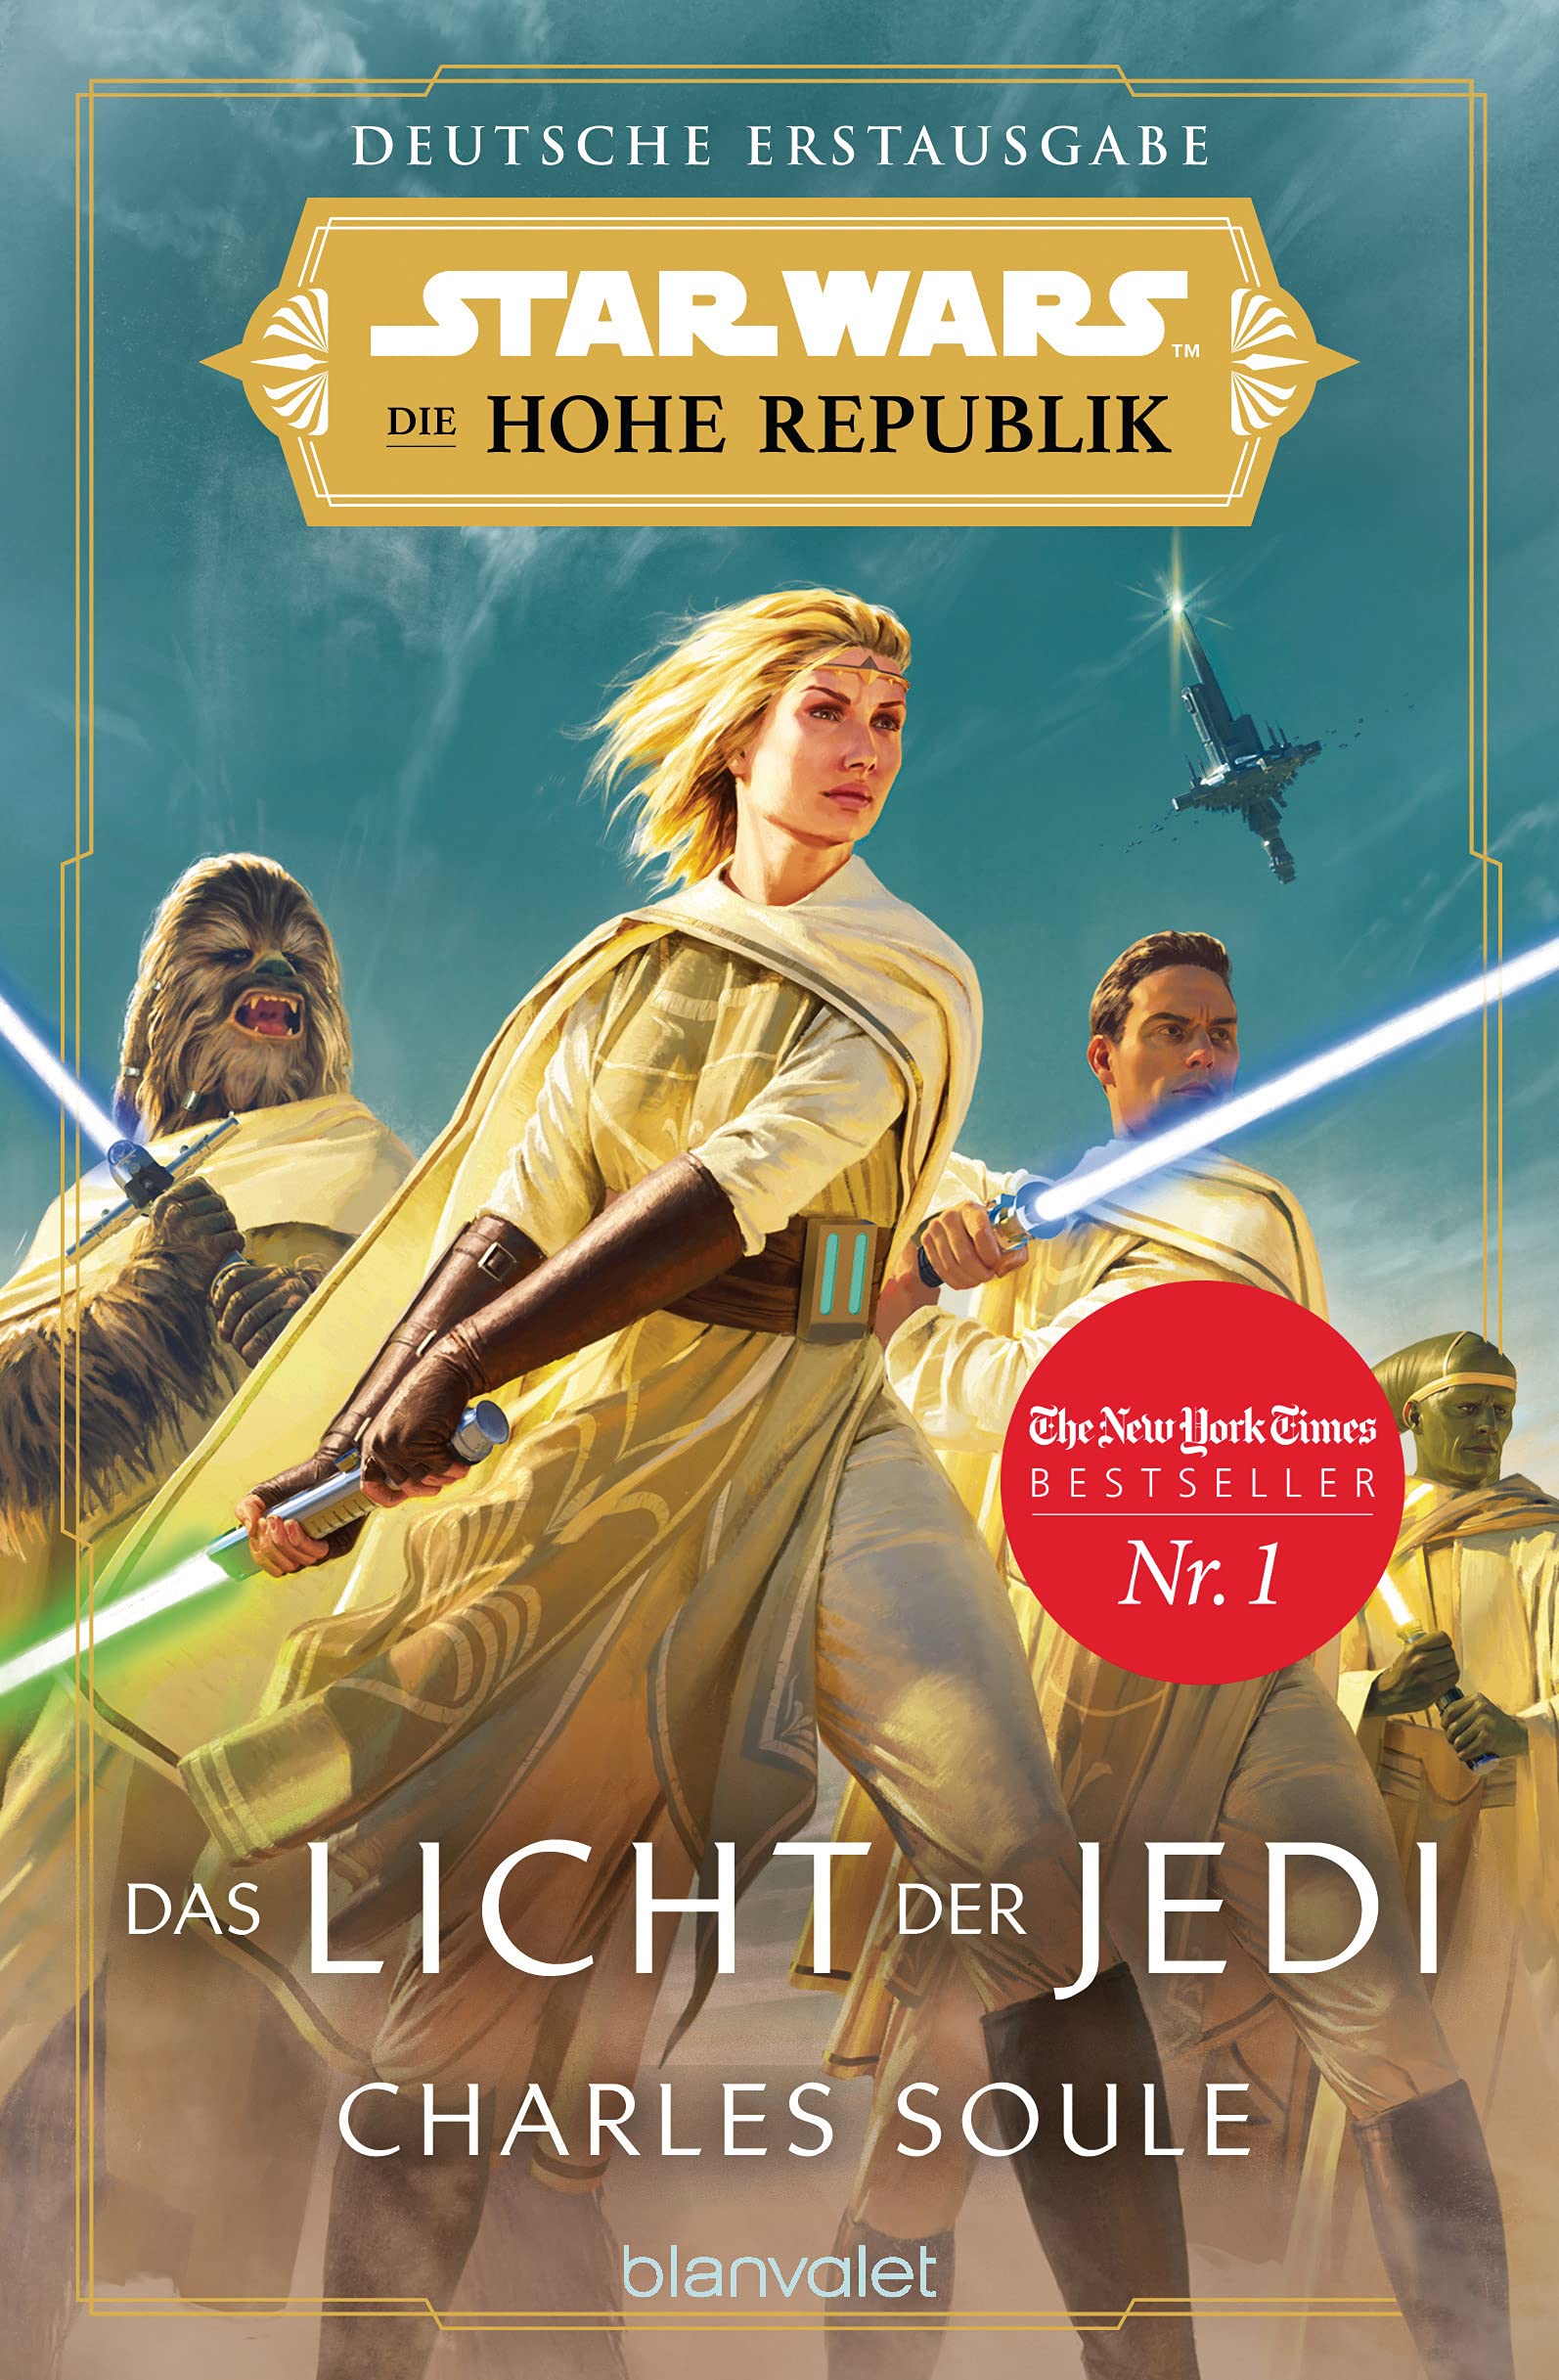 Die Hohe Republik: Das Licht der Jedi (16.08.2021)